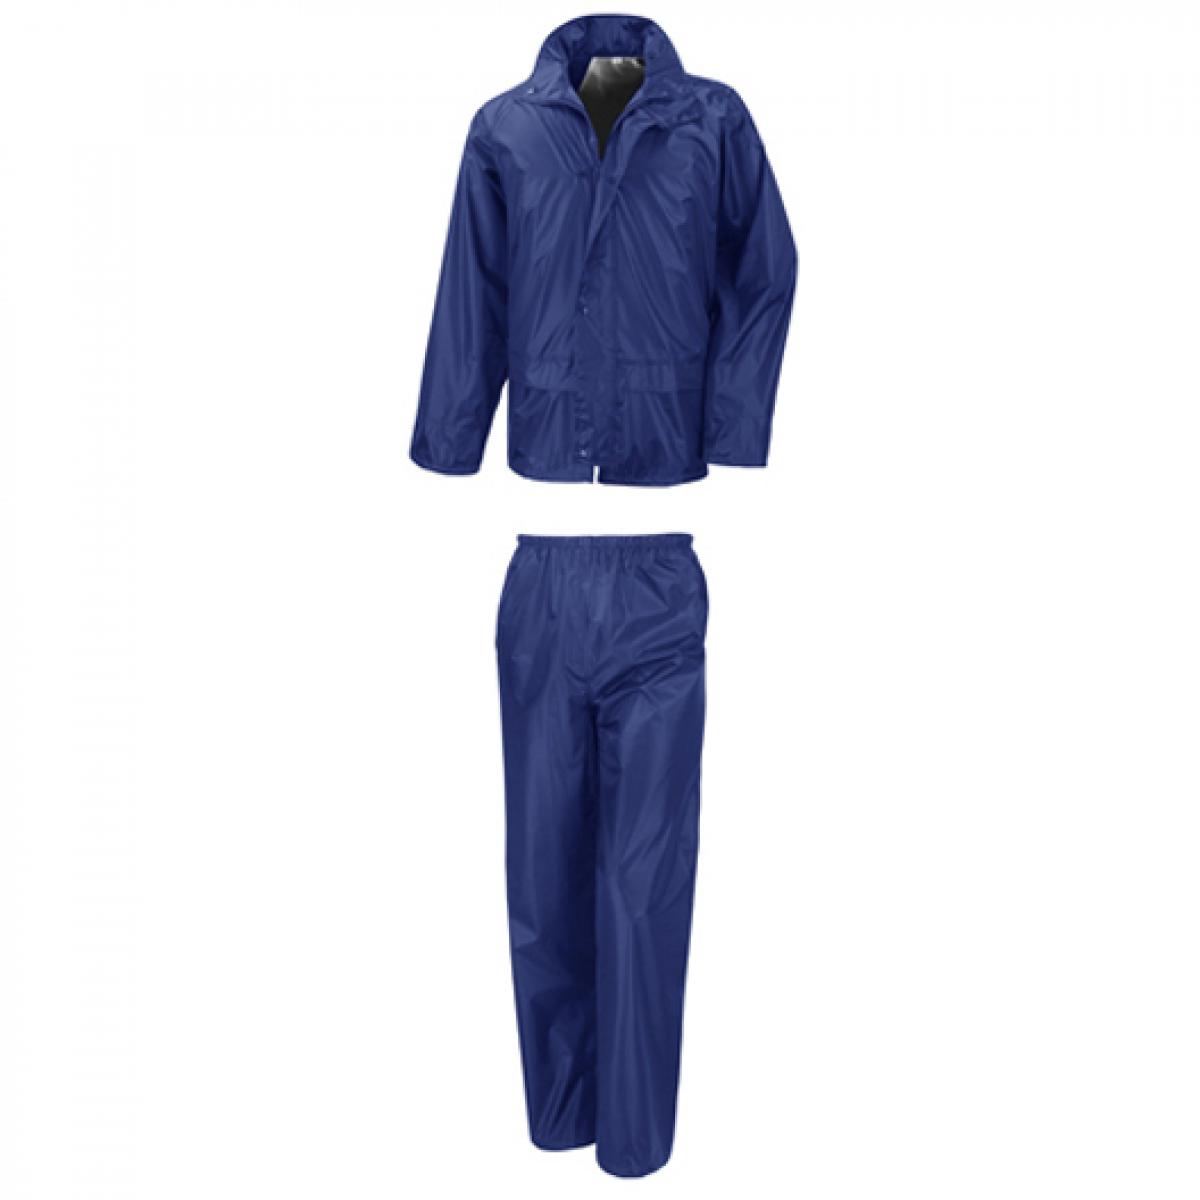 Hersteller: Result Core Herstellernummer: R225X Artikelbezeichnung: Rain Suit Farbe: Royal